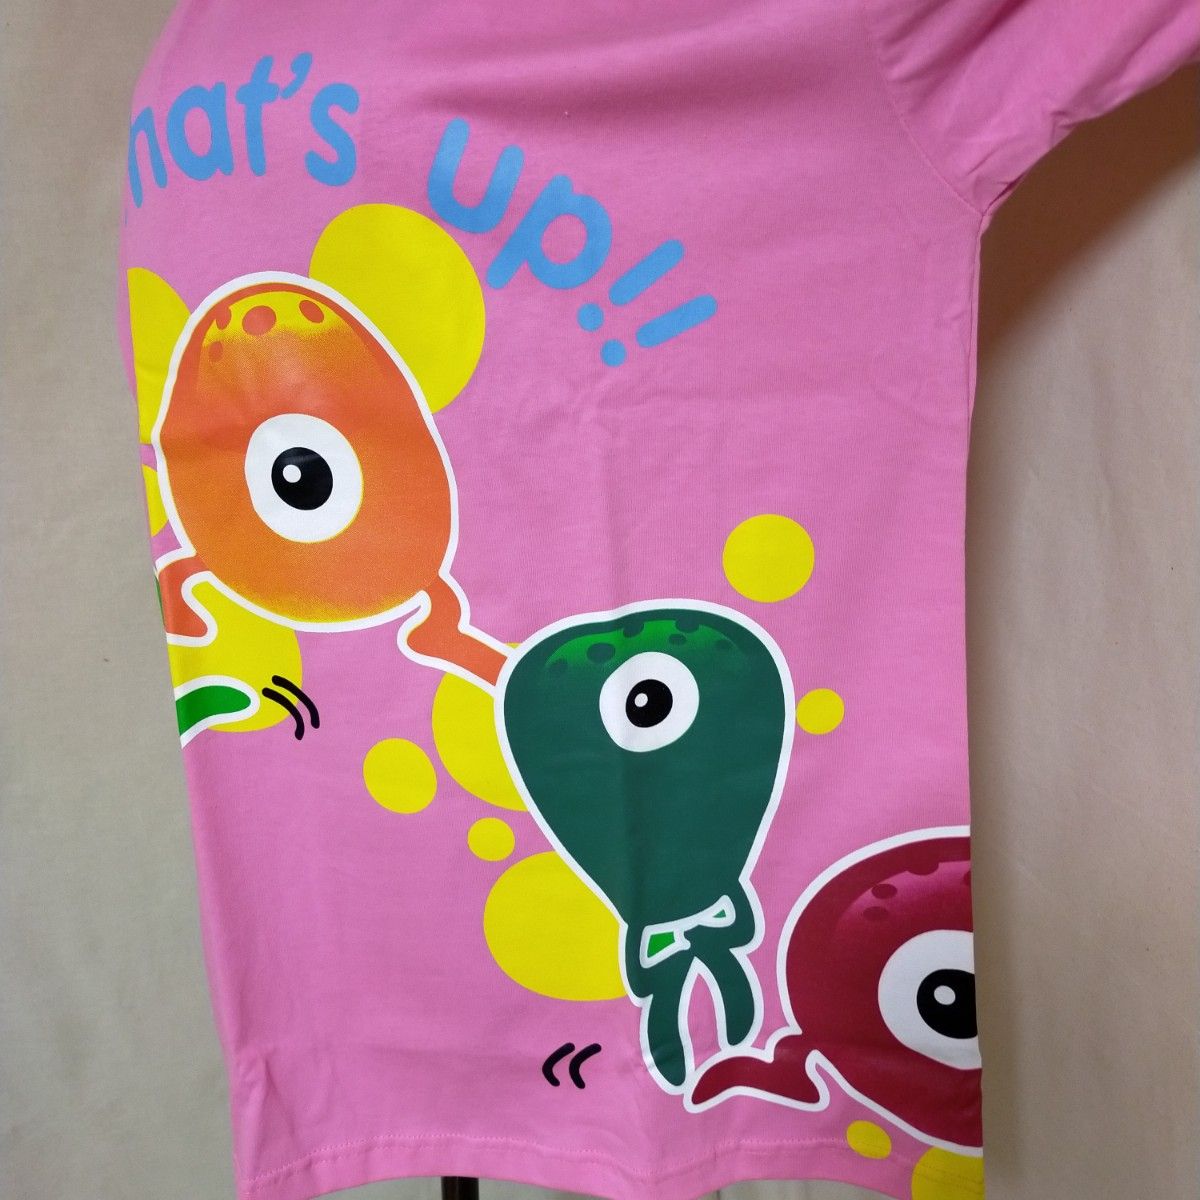 新品 ユニセックス 半袖Tシャツ 綿 Ｌサイズ プリント ピンク タグ付き クルーネック メンズ レディース